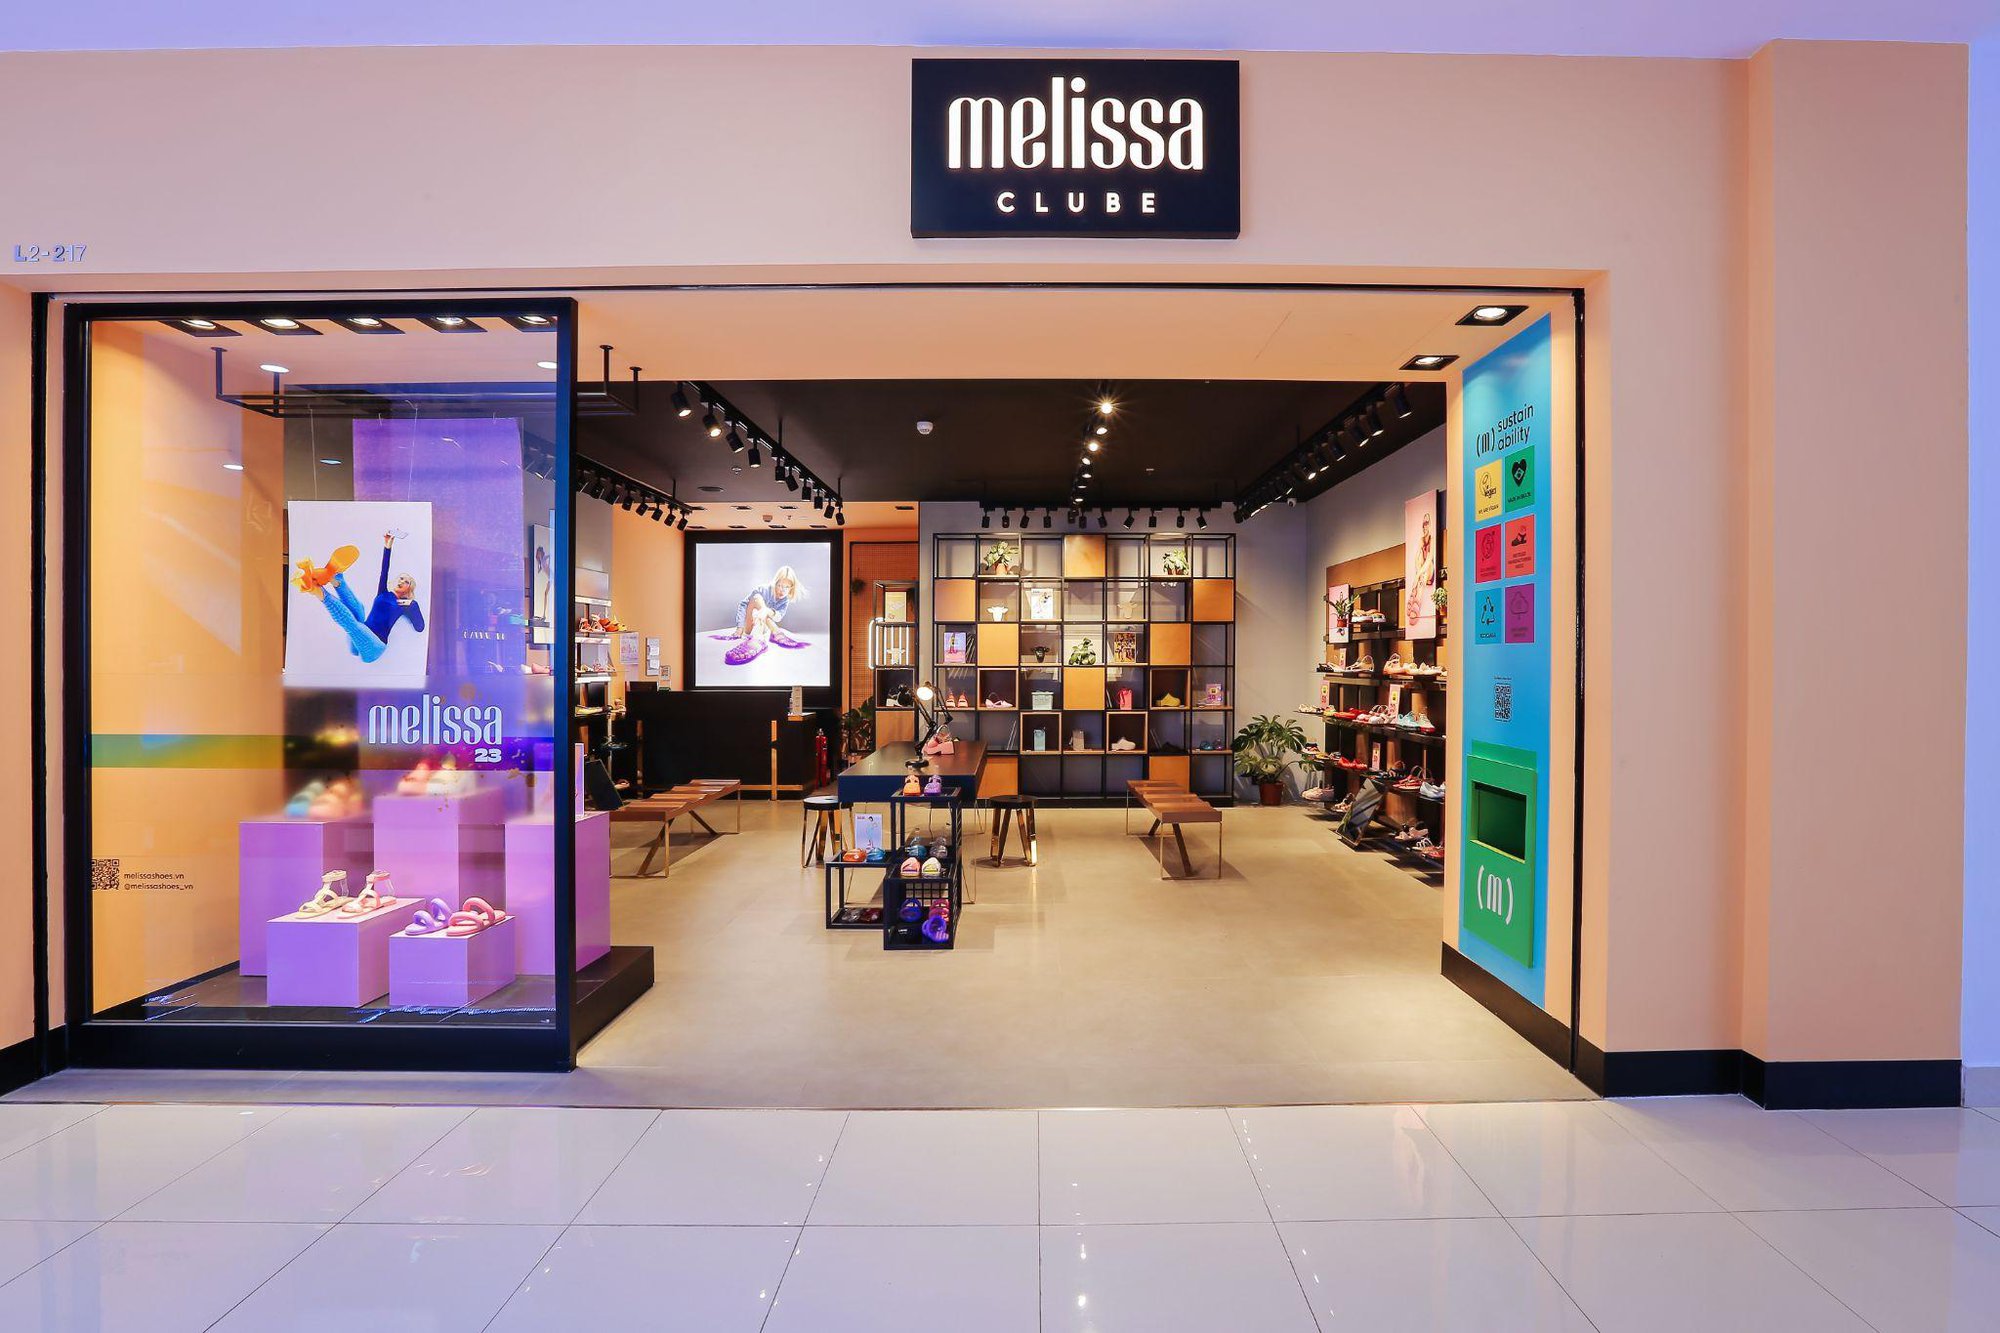 Melissa chiều lòng hội yêu thời trang bền vững với cửa hàng mới ở trung tâm Hà Nội - Ảnh 2.